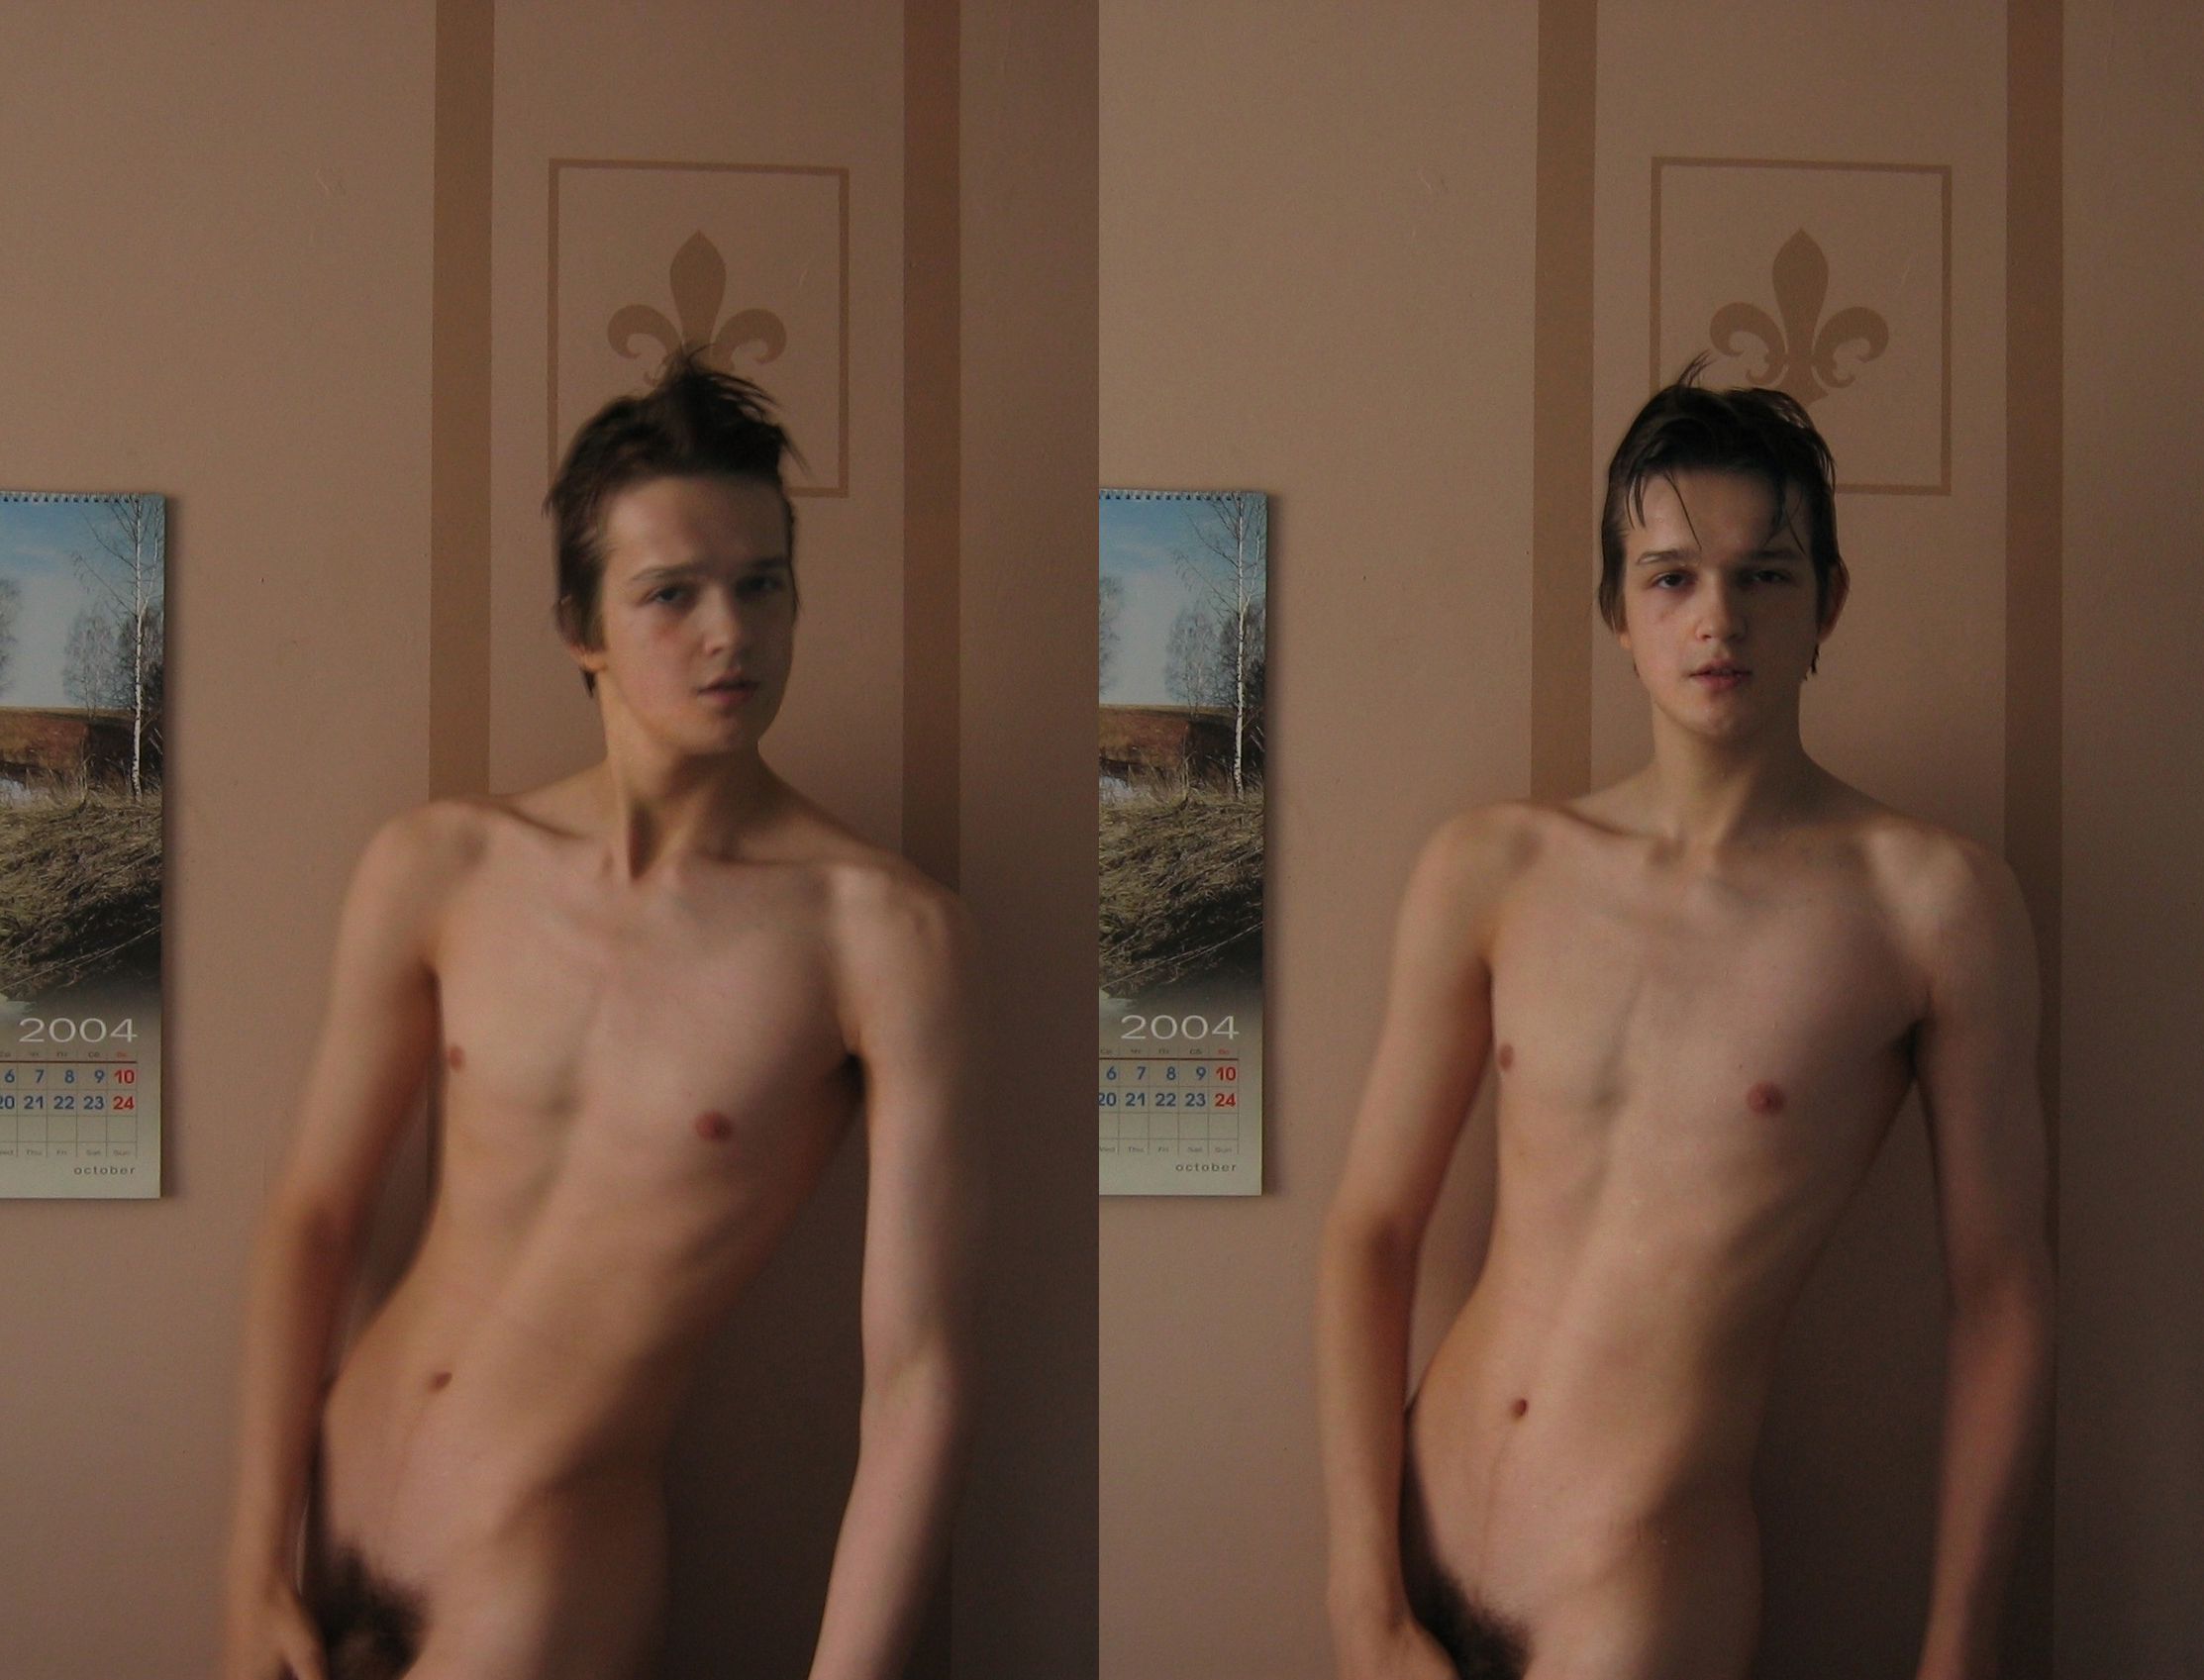 wet slender nude teen art lad queer boy Paul Brazhnikov